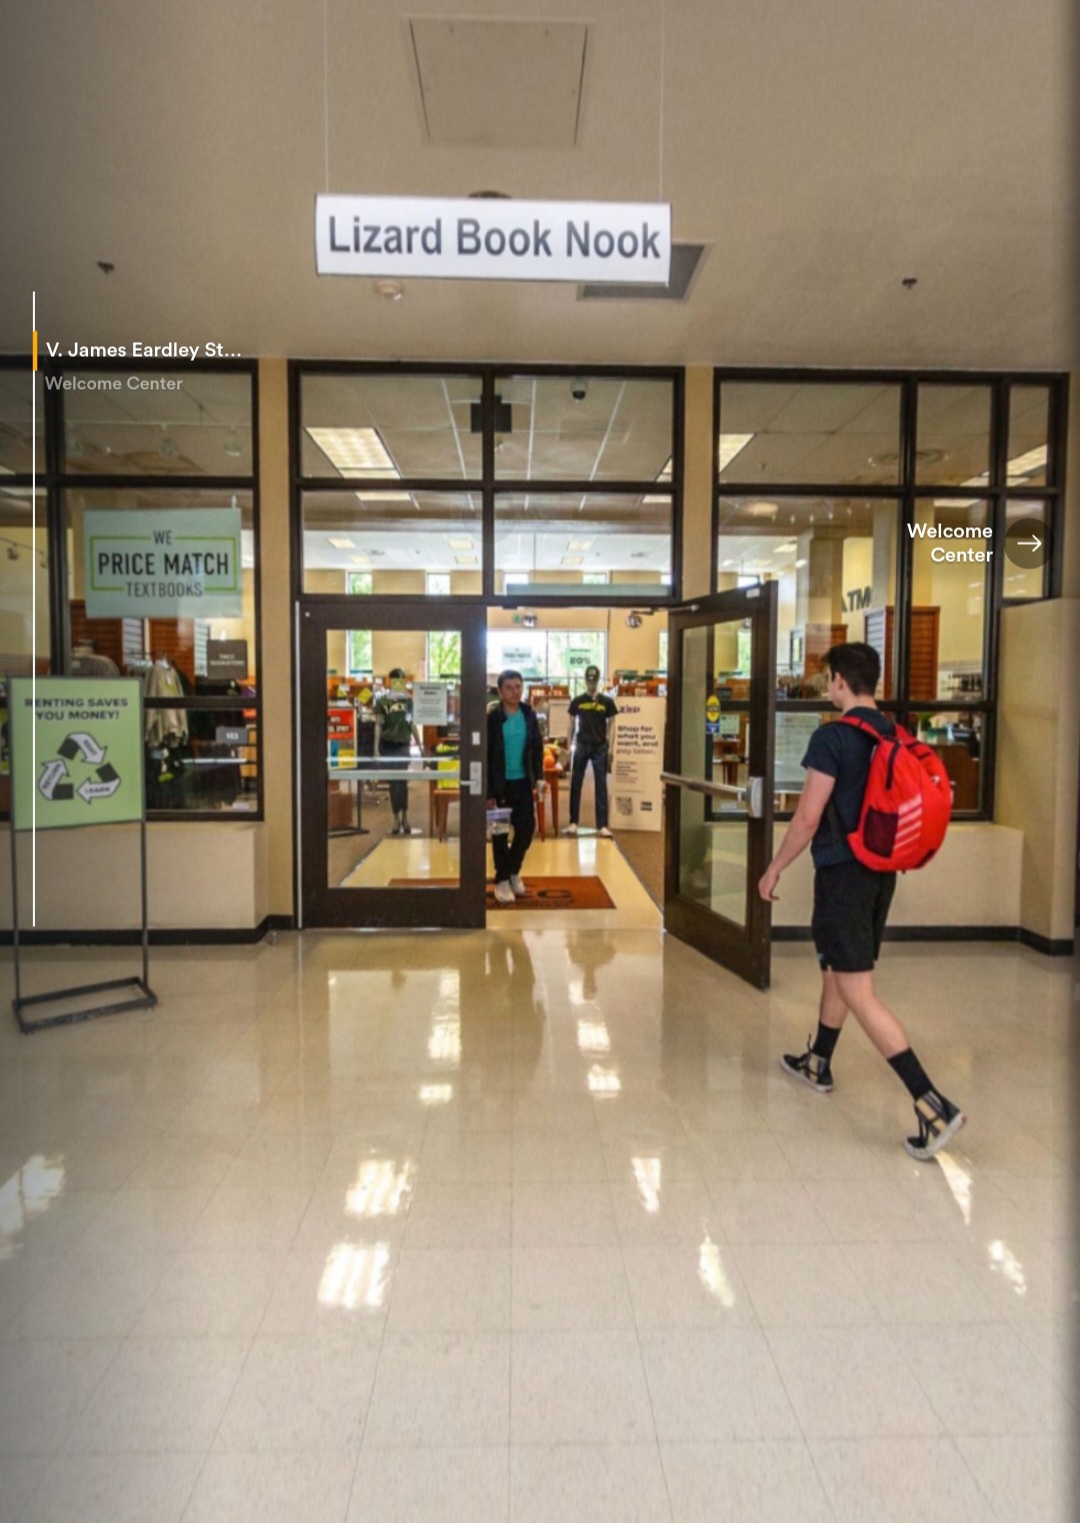 TMCC Bookstore - Lizard Book Nook